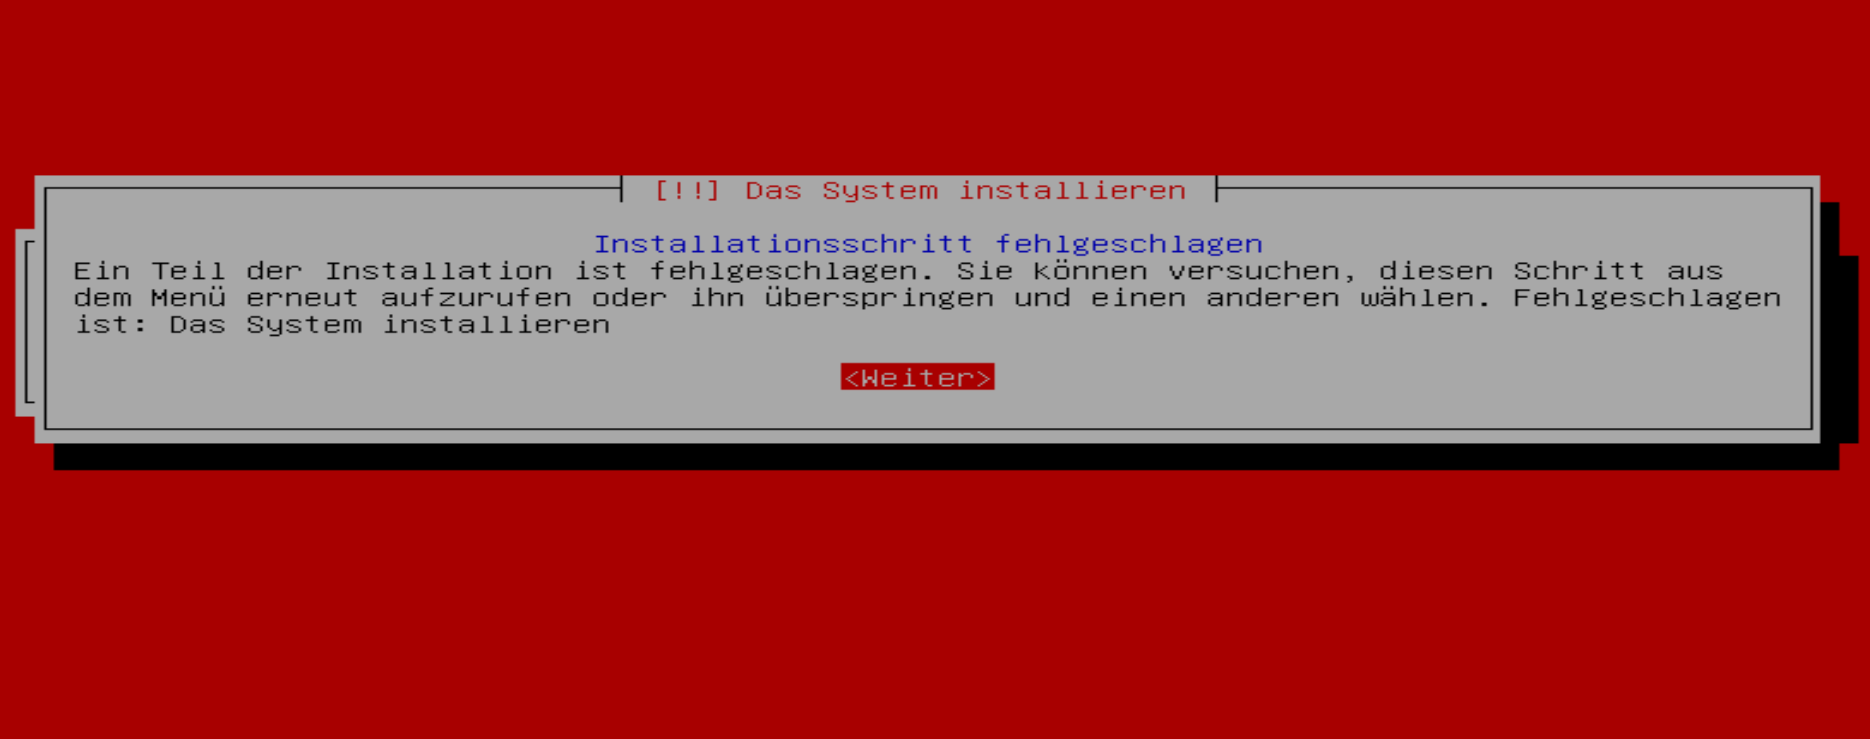 Install failed: installation failed. Your system failed